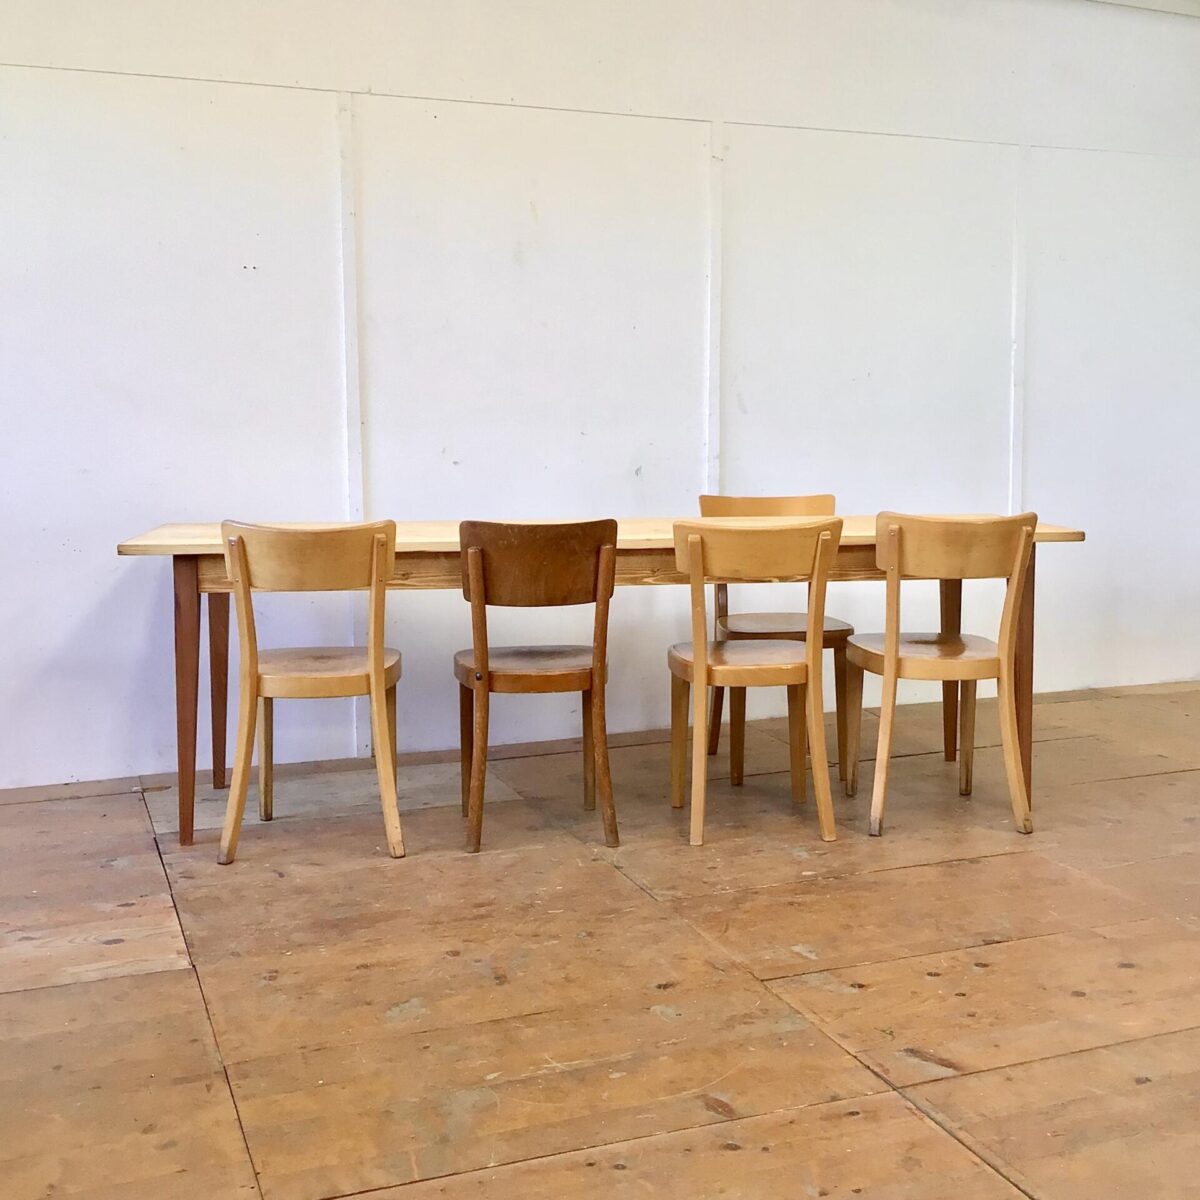 Tannenholz Biedermeiertisch 250x70cm Höhe 77cm. Dieser schlichte lange Holztisch haben wir bei der Restaurierung möglichst geradlinig und Kantig belassen. Der Tisch ist mit Naturöl behandelt. Die Tischbeine sind aus Lärchenholz. 